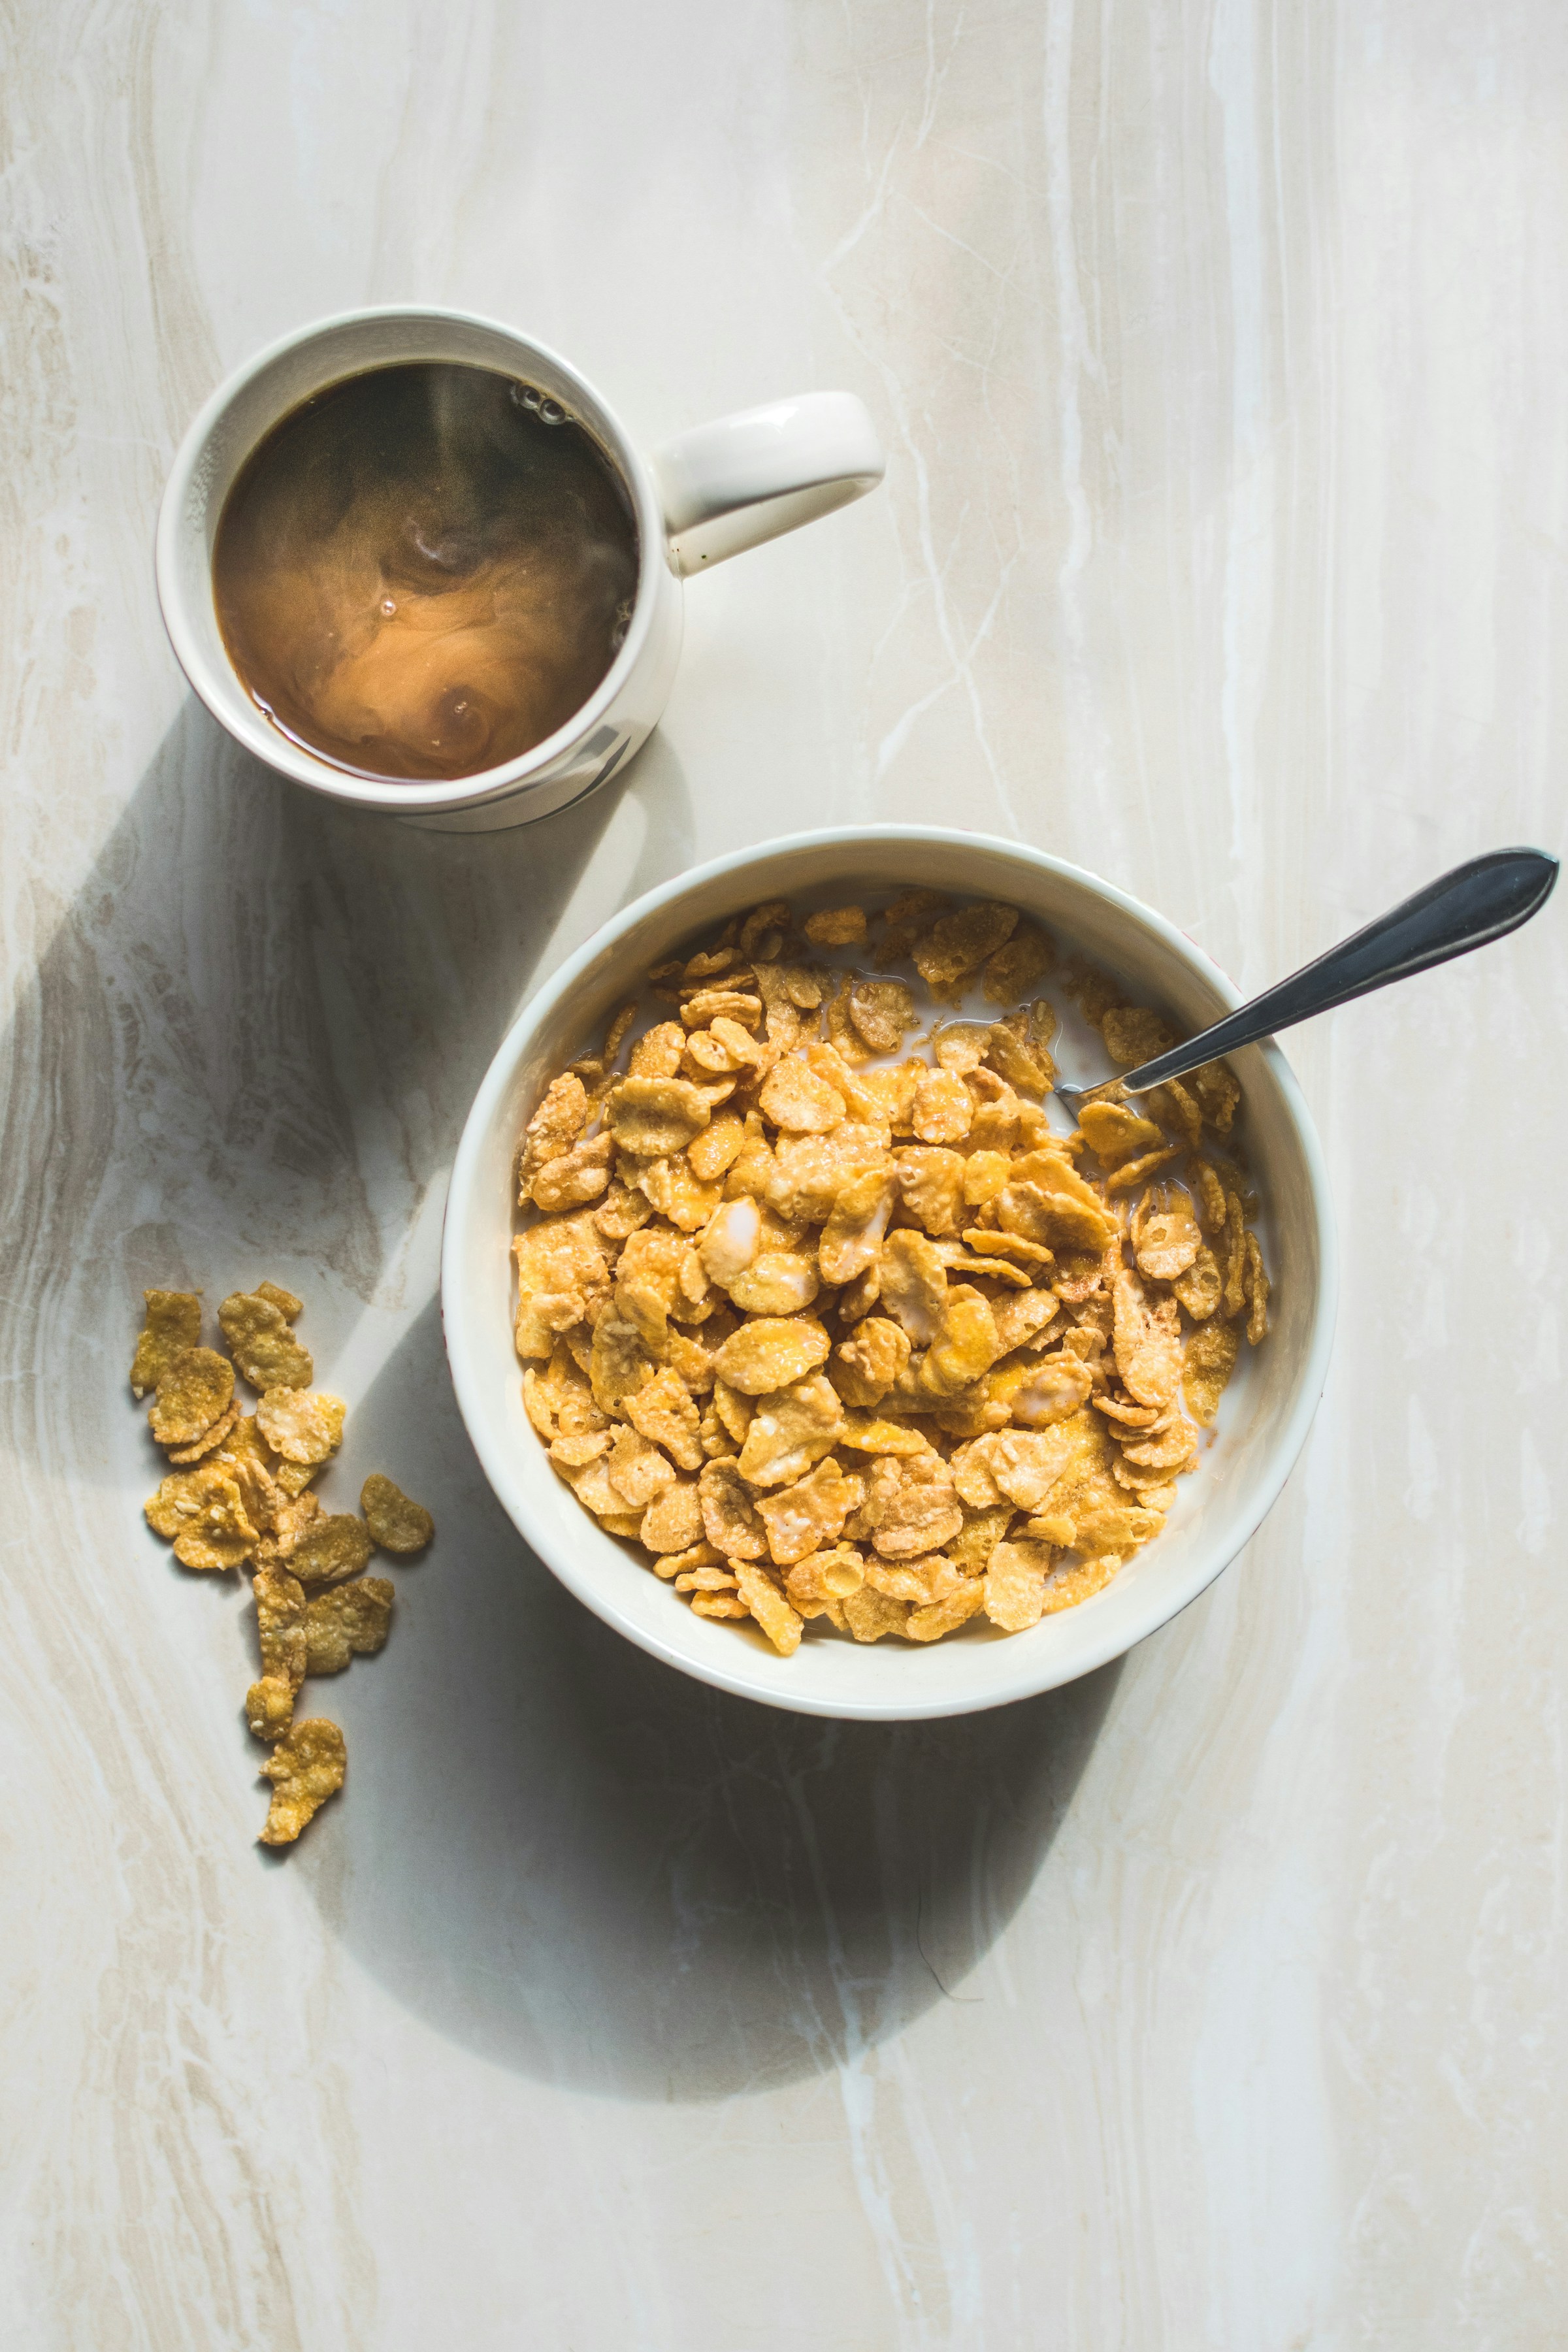 Un bol de cereales y una taza de café | Fuente: Unsplash